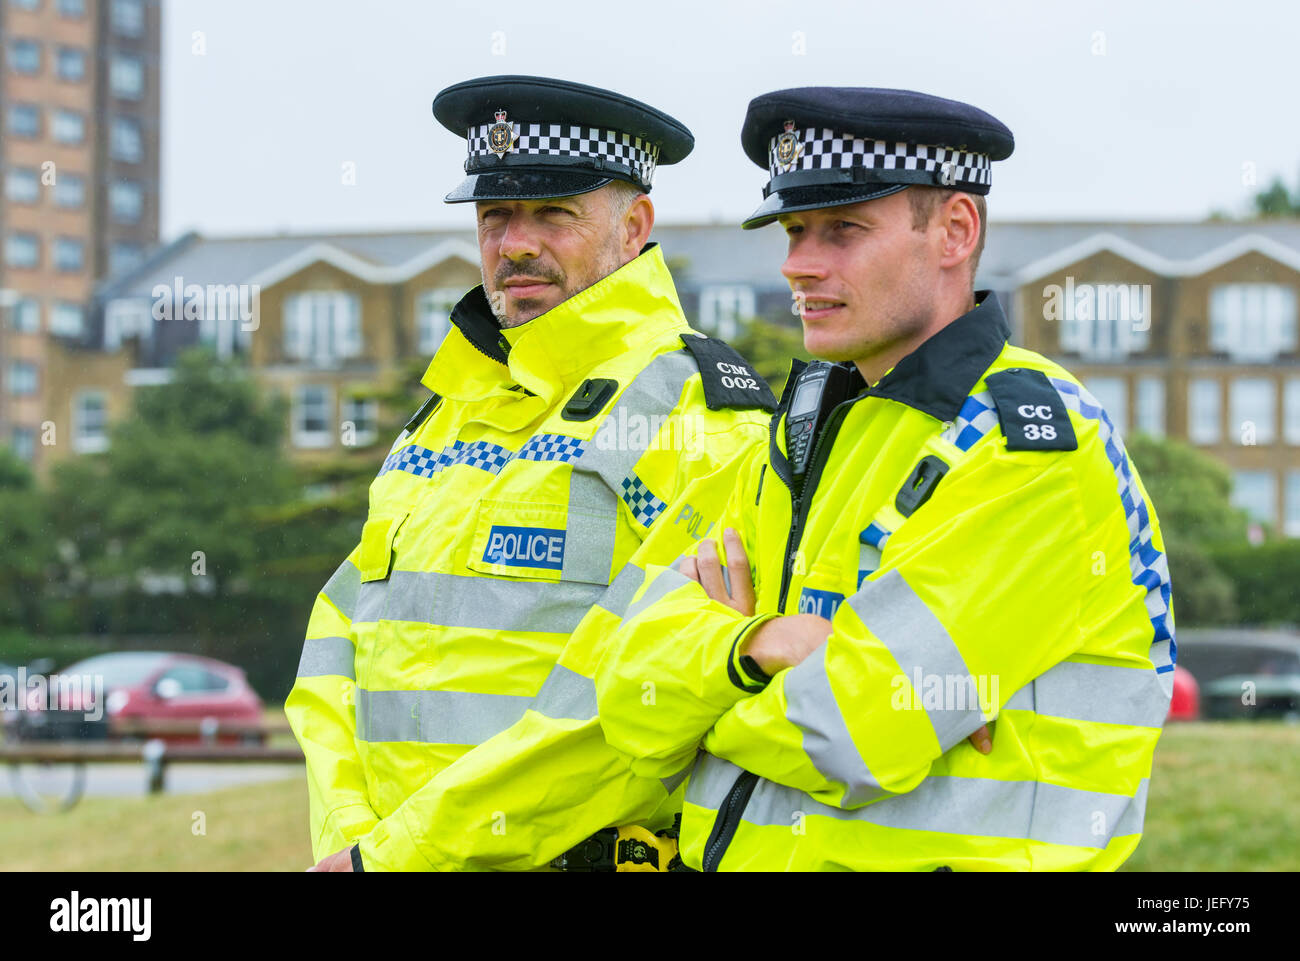 Zwei männliche Polizisten halten sehen bei einer Outdoor-Veranstaltung im Regen. Königreich Sussex Polizisten. Stockfoto